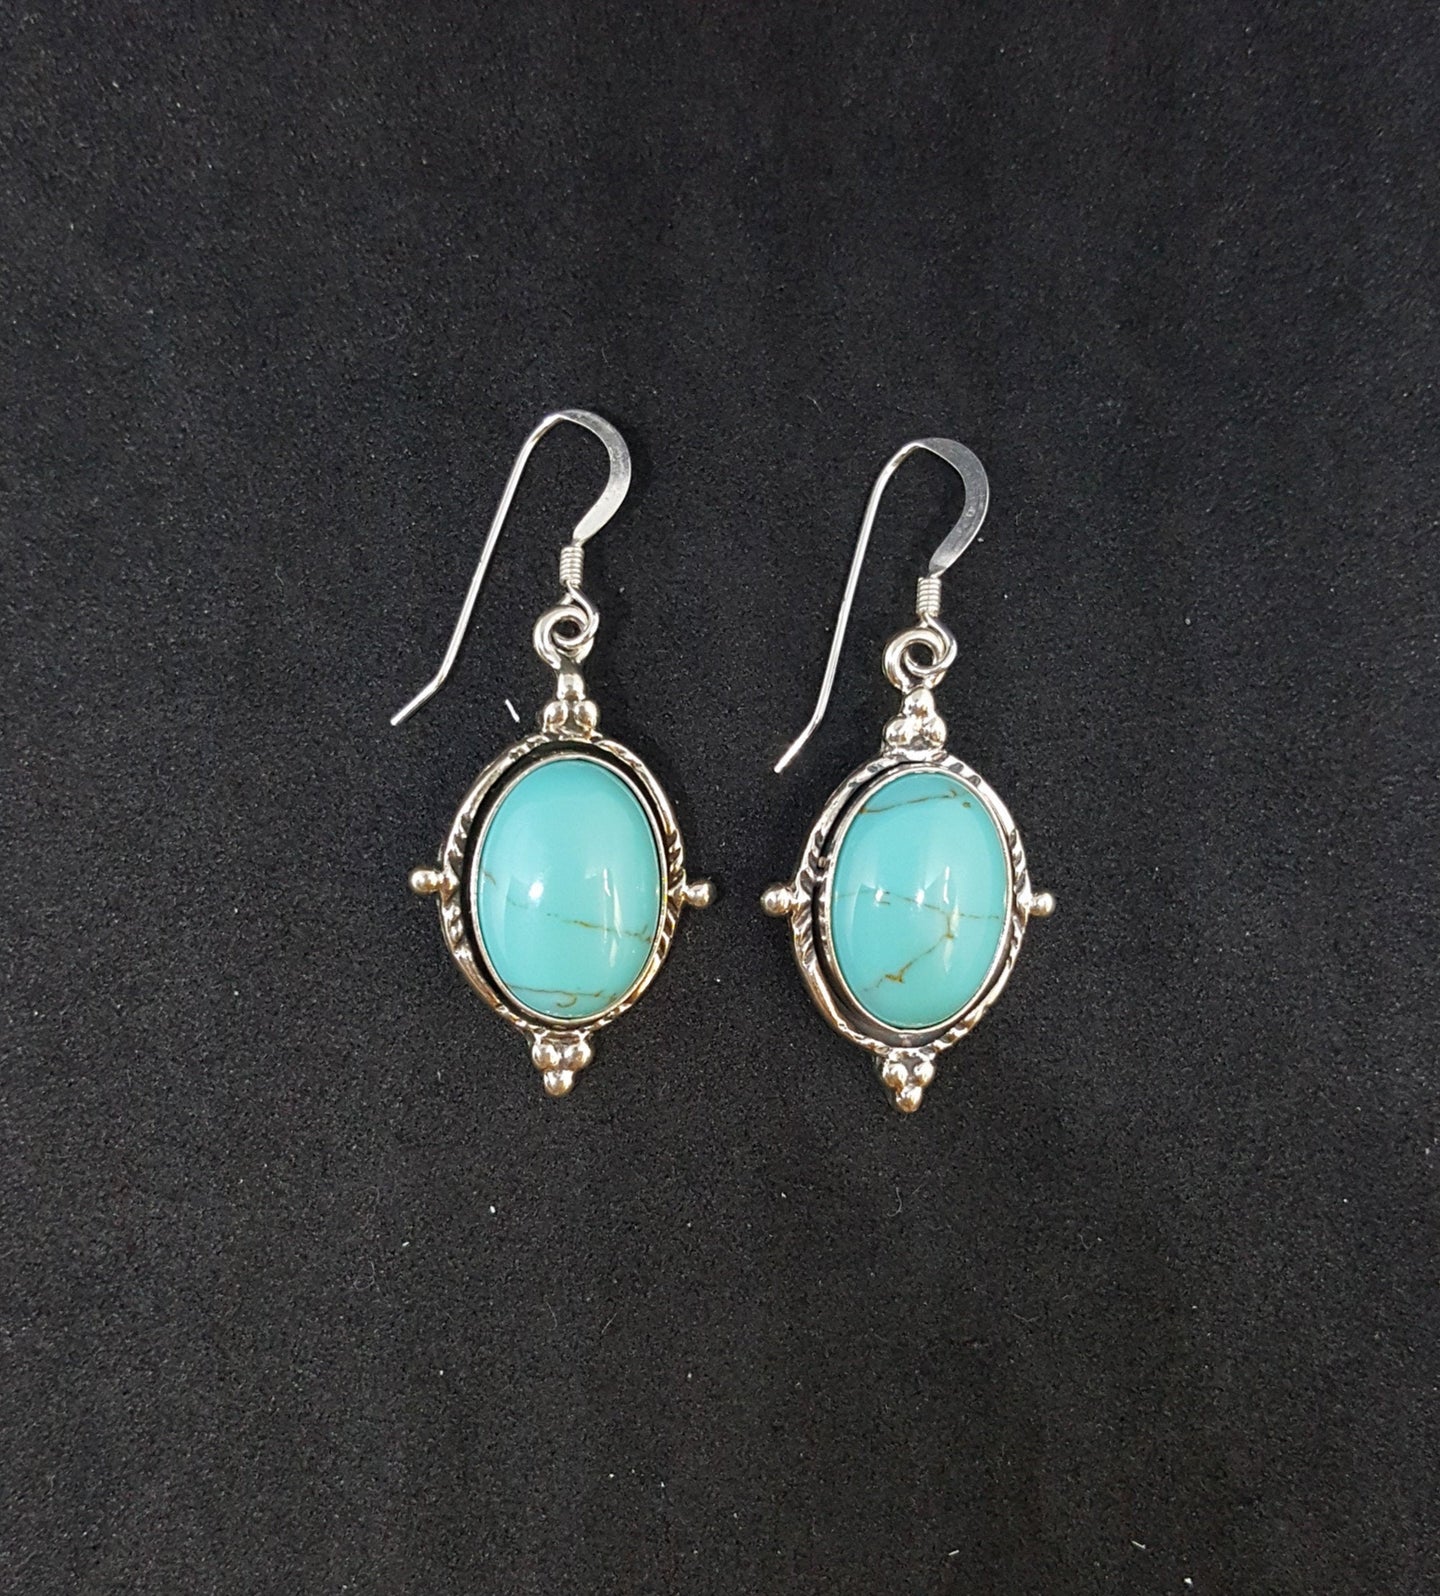 Southwest Big Oval 14x10mm Kingman Turquoise sterling silver dangle earrings